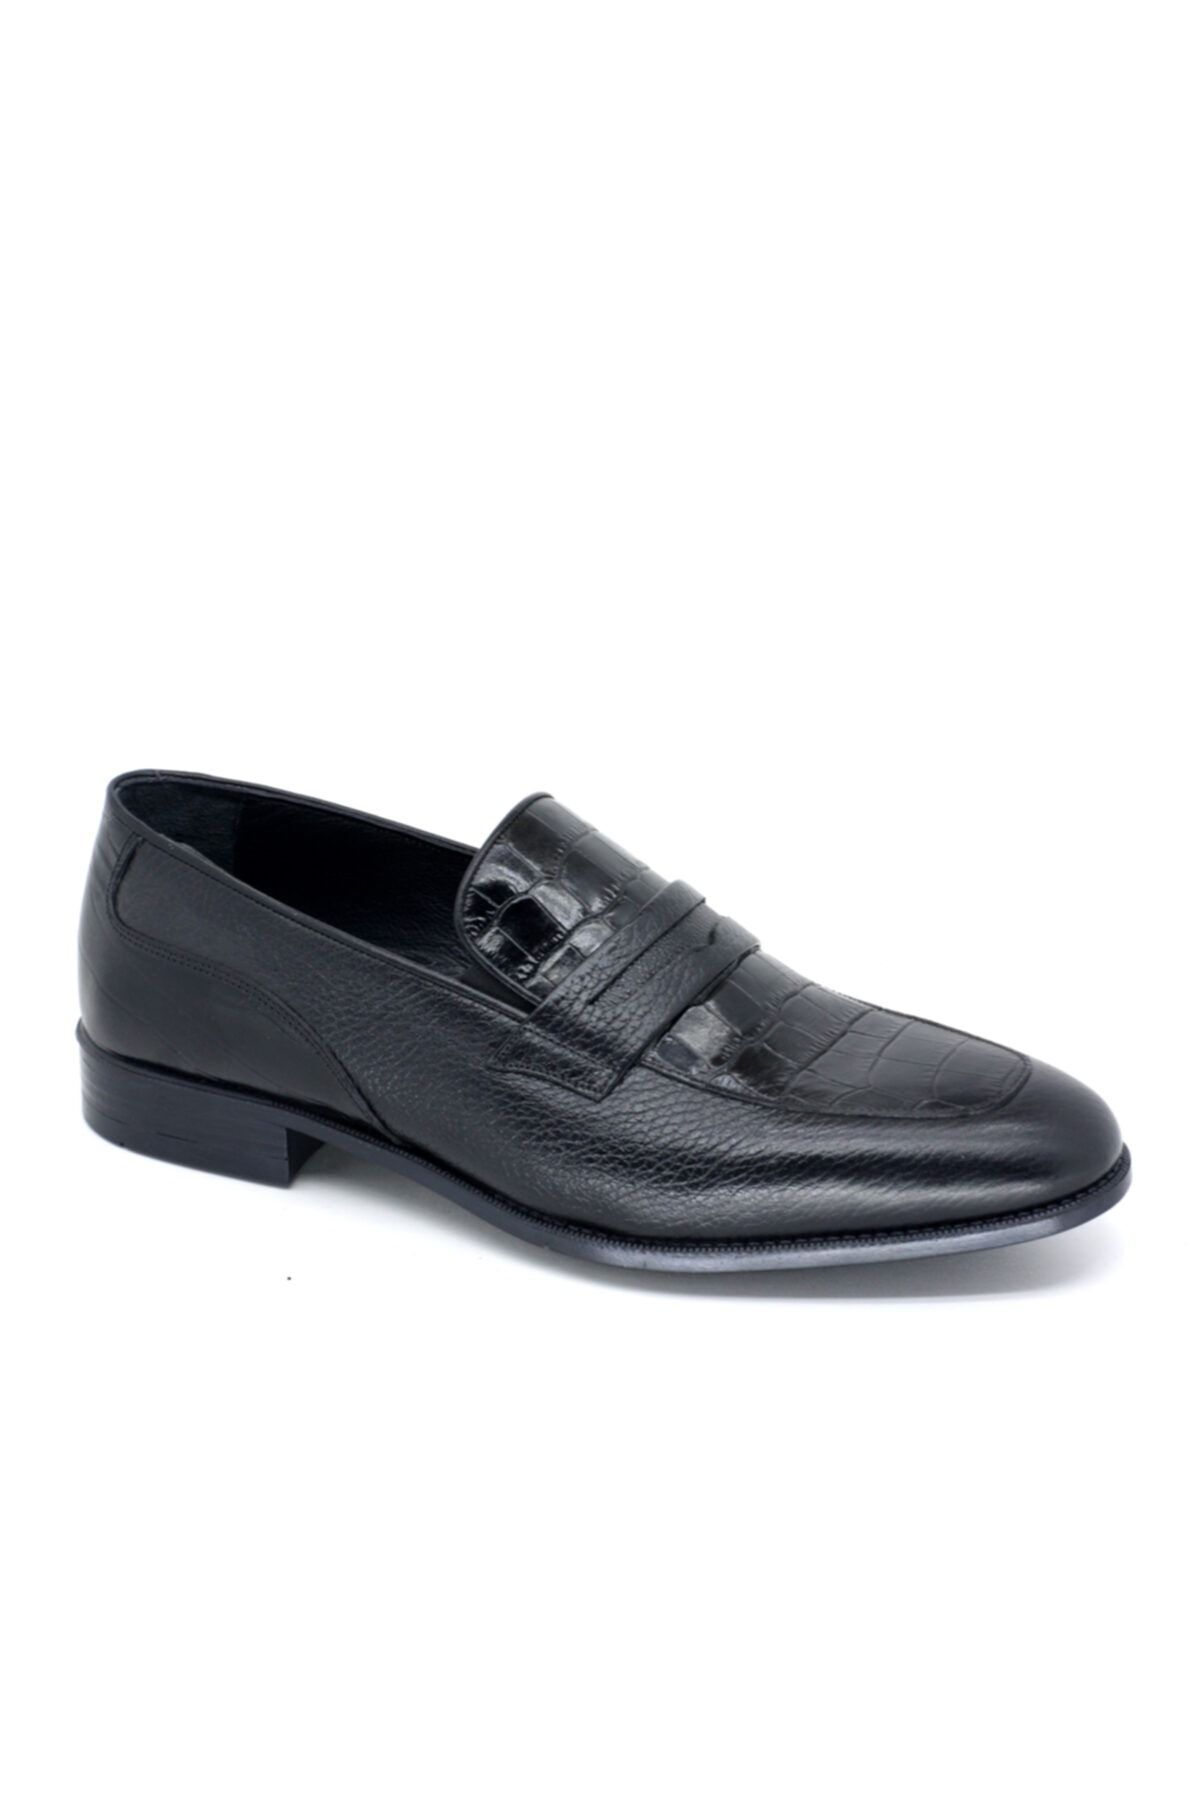 TRENDYSHOES Trendyshose 2455 Erkek Rahat Taban Hakiki Deri Günlük Ayakkabı